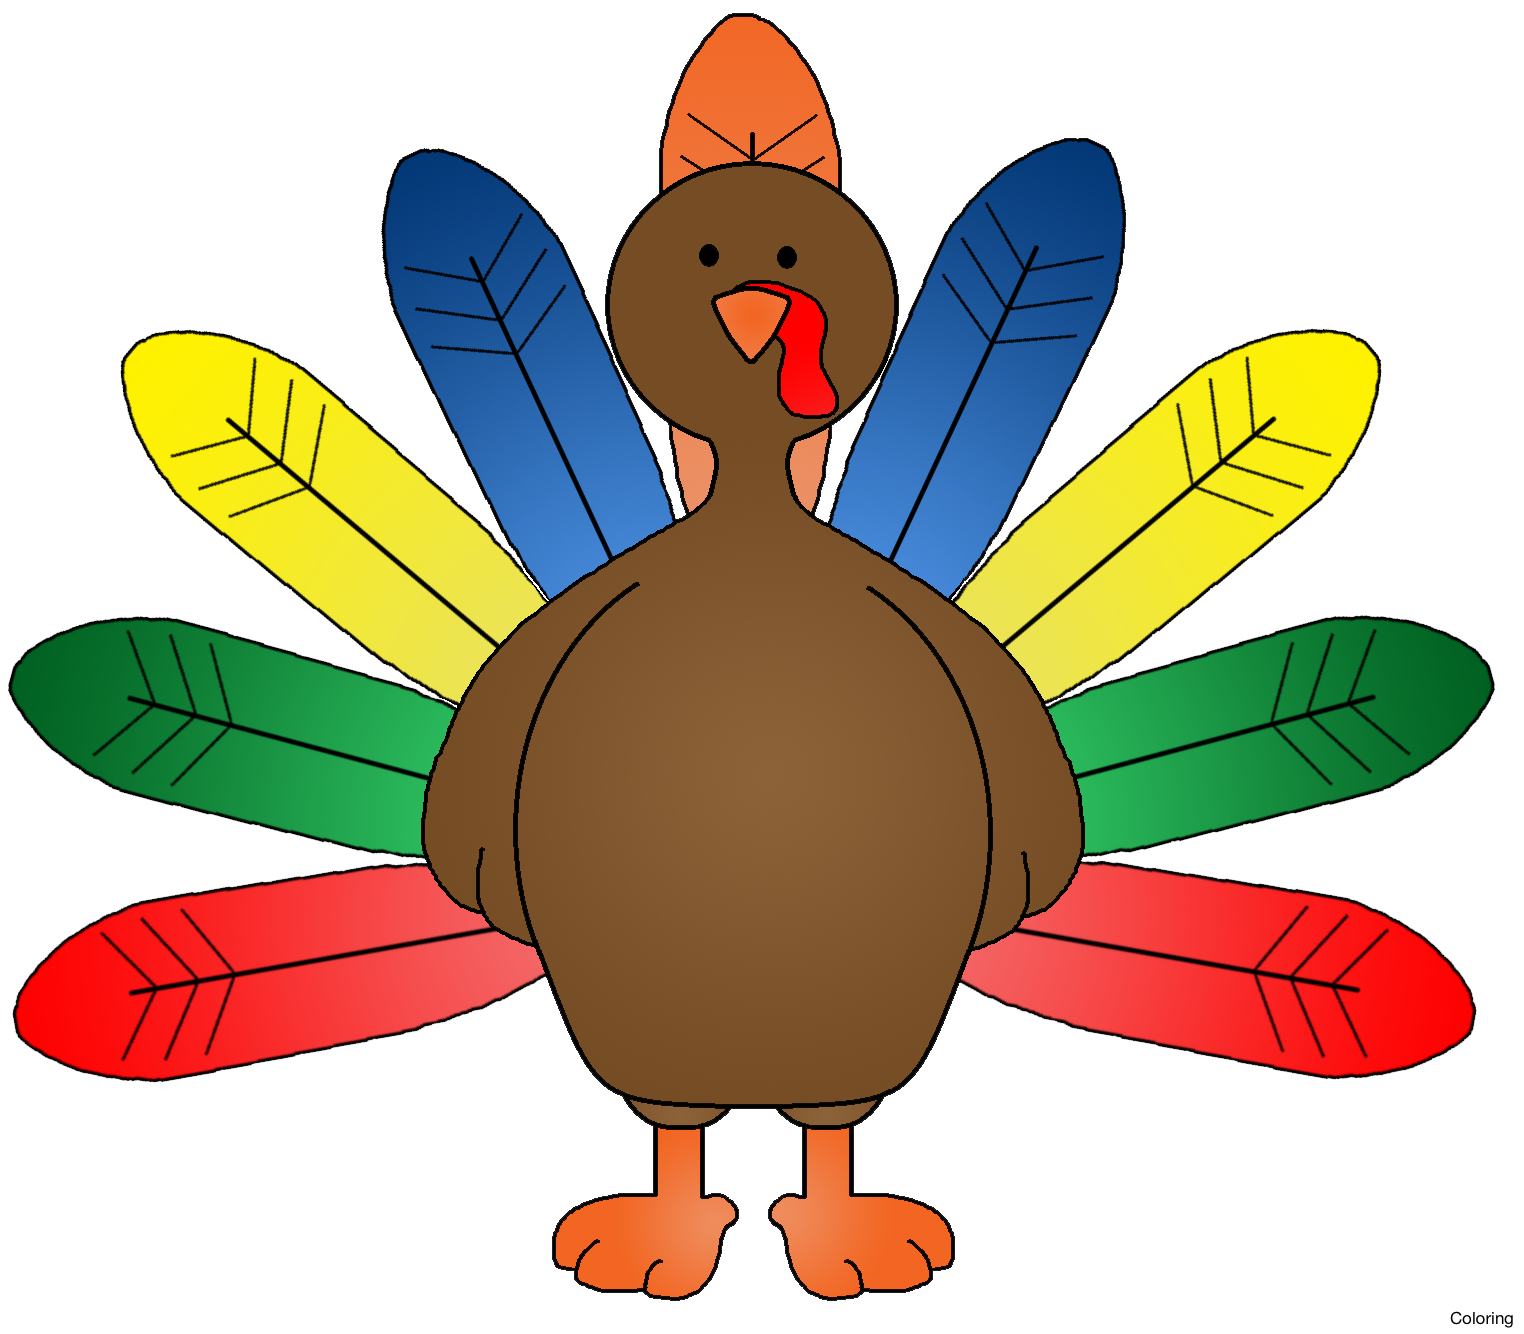 Animated turkey cilpart ingenious. Turkeys clipart fun